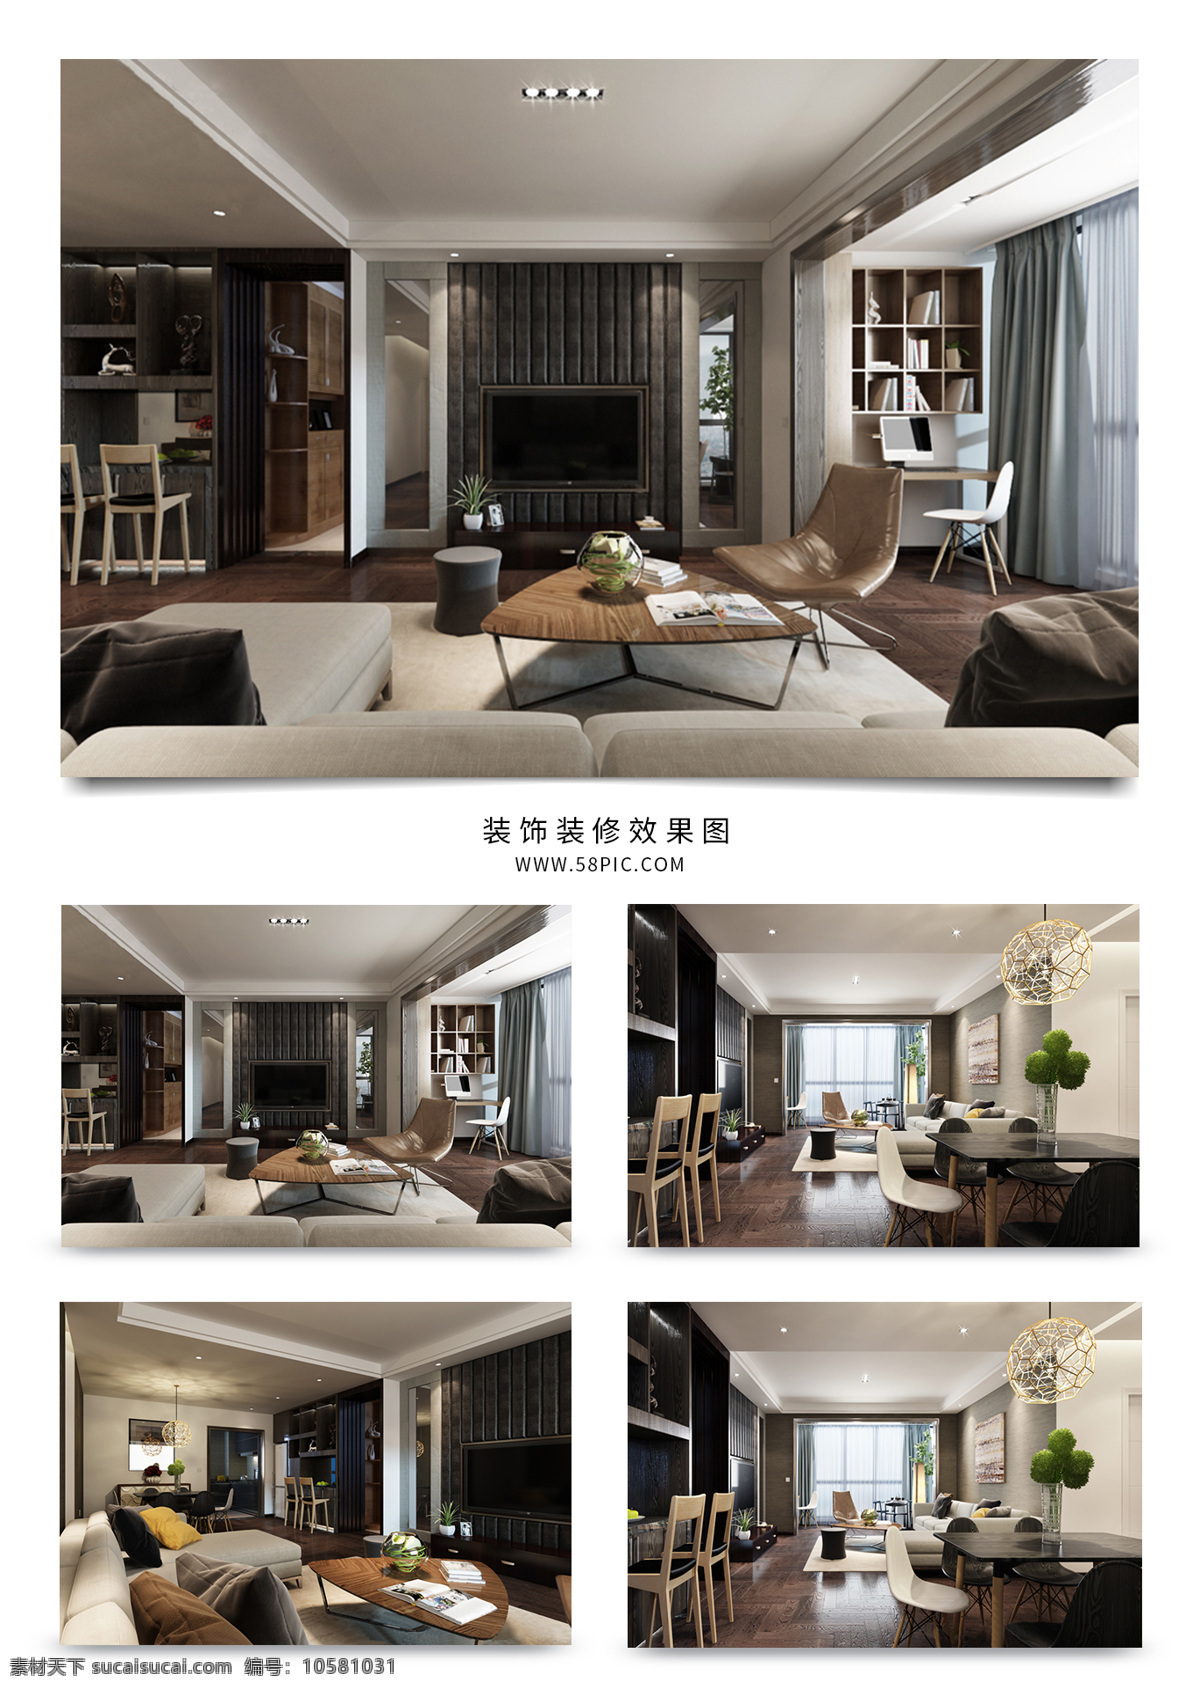 现代 风格 简约 客厅 效果图 室内设计 沙发 模型 室内装饰 最新